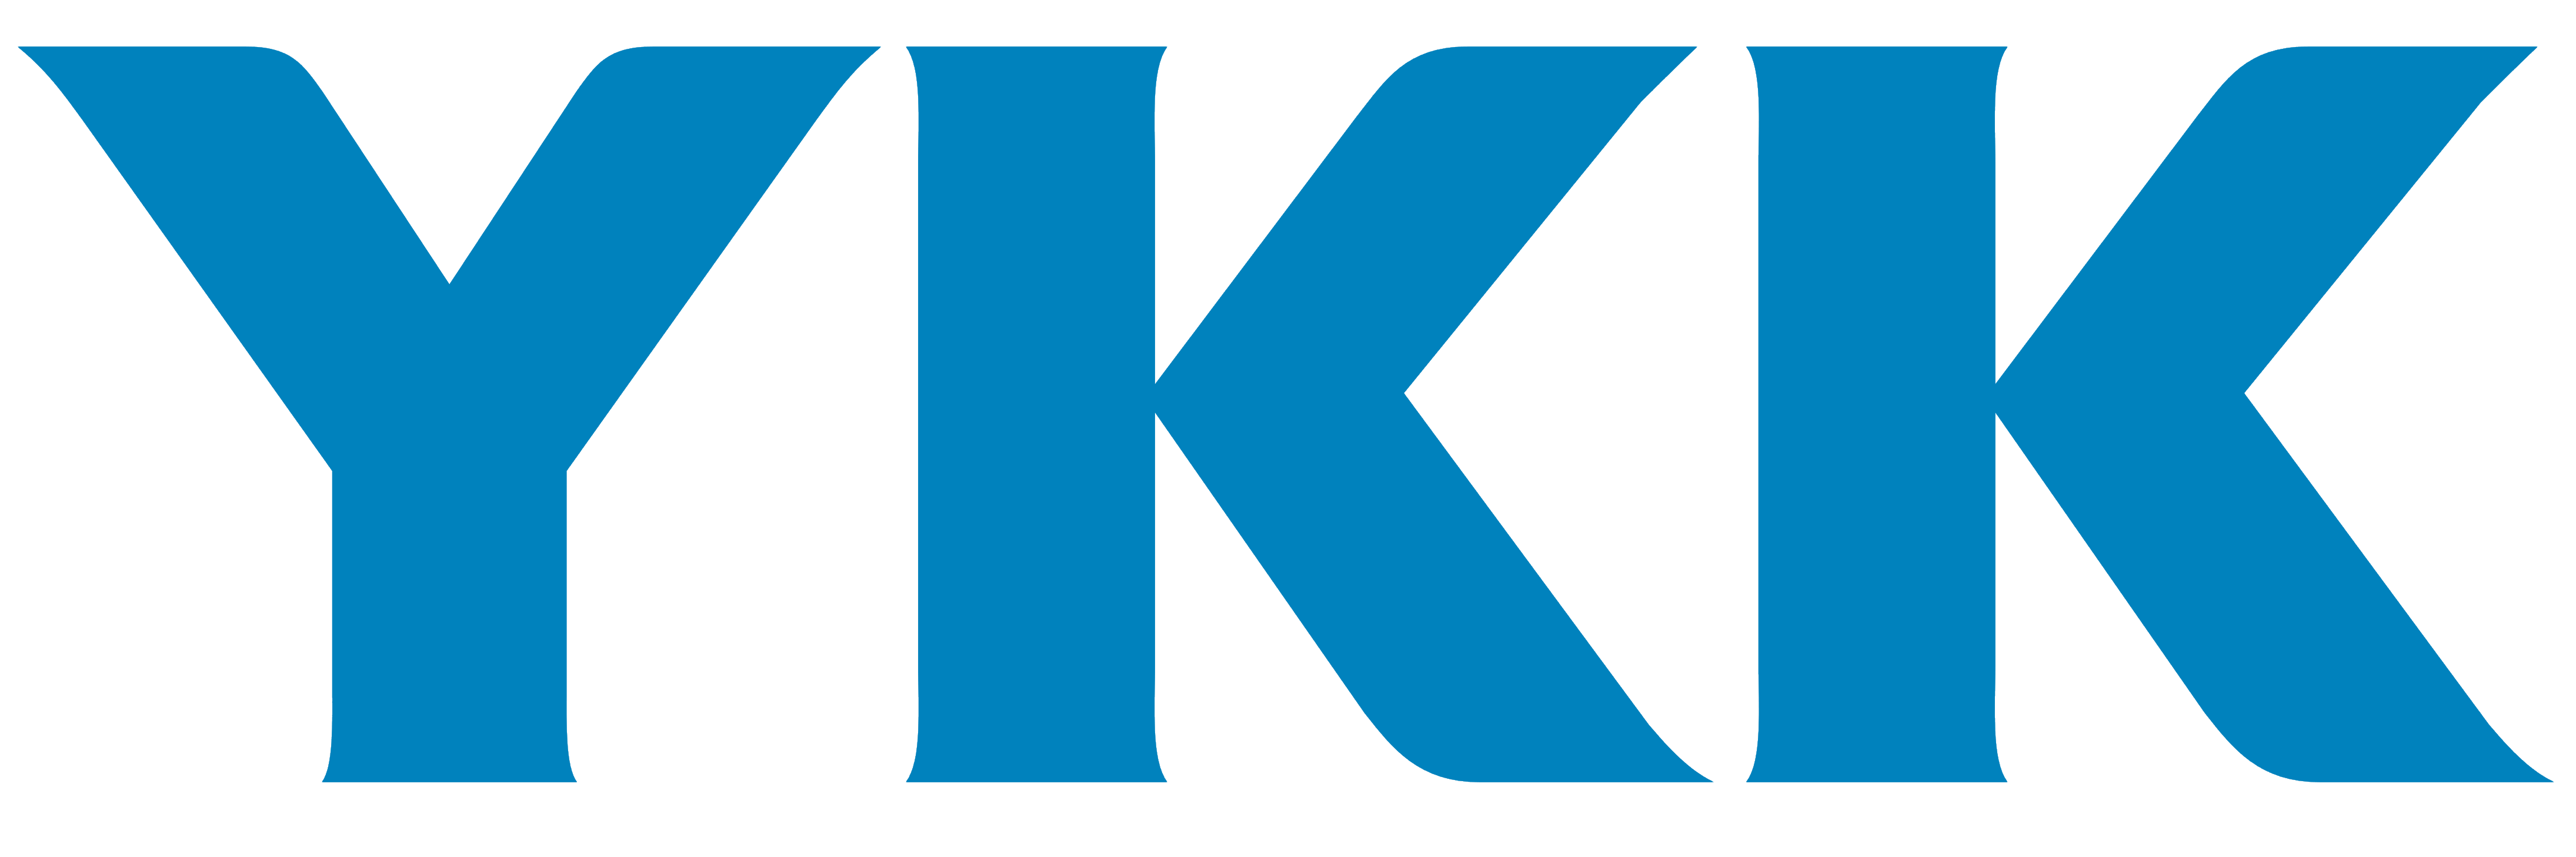 YKK Deutschland GmbH